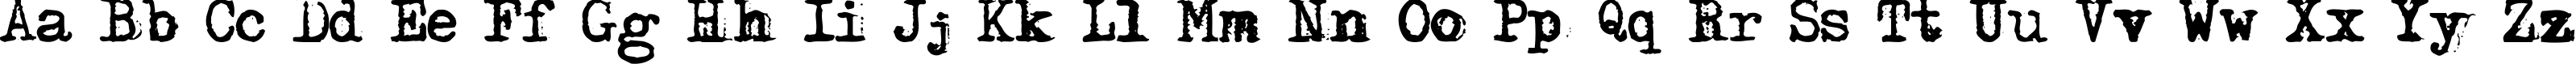 Пример написания английского алфавита шрифтом DS Moster